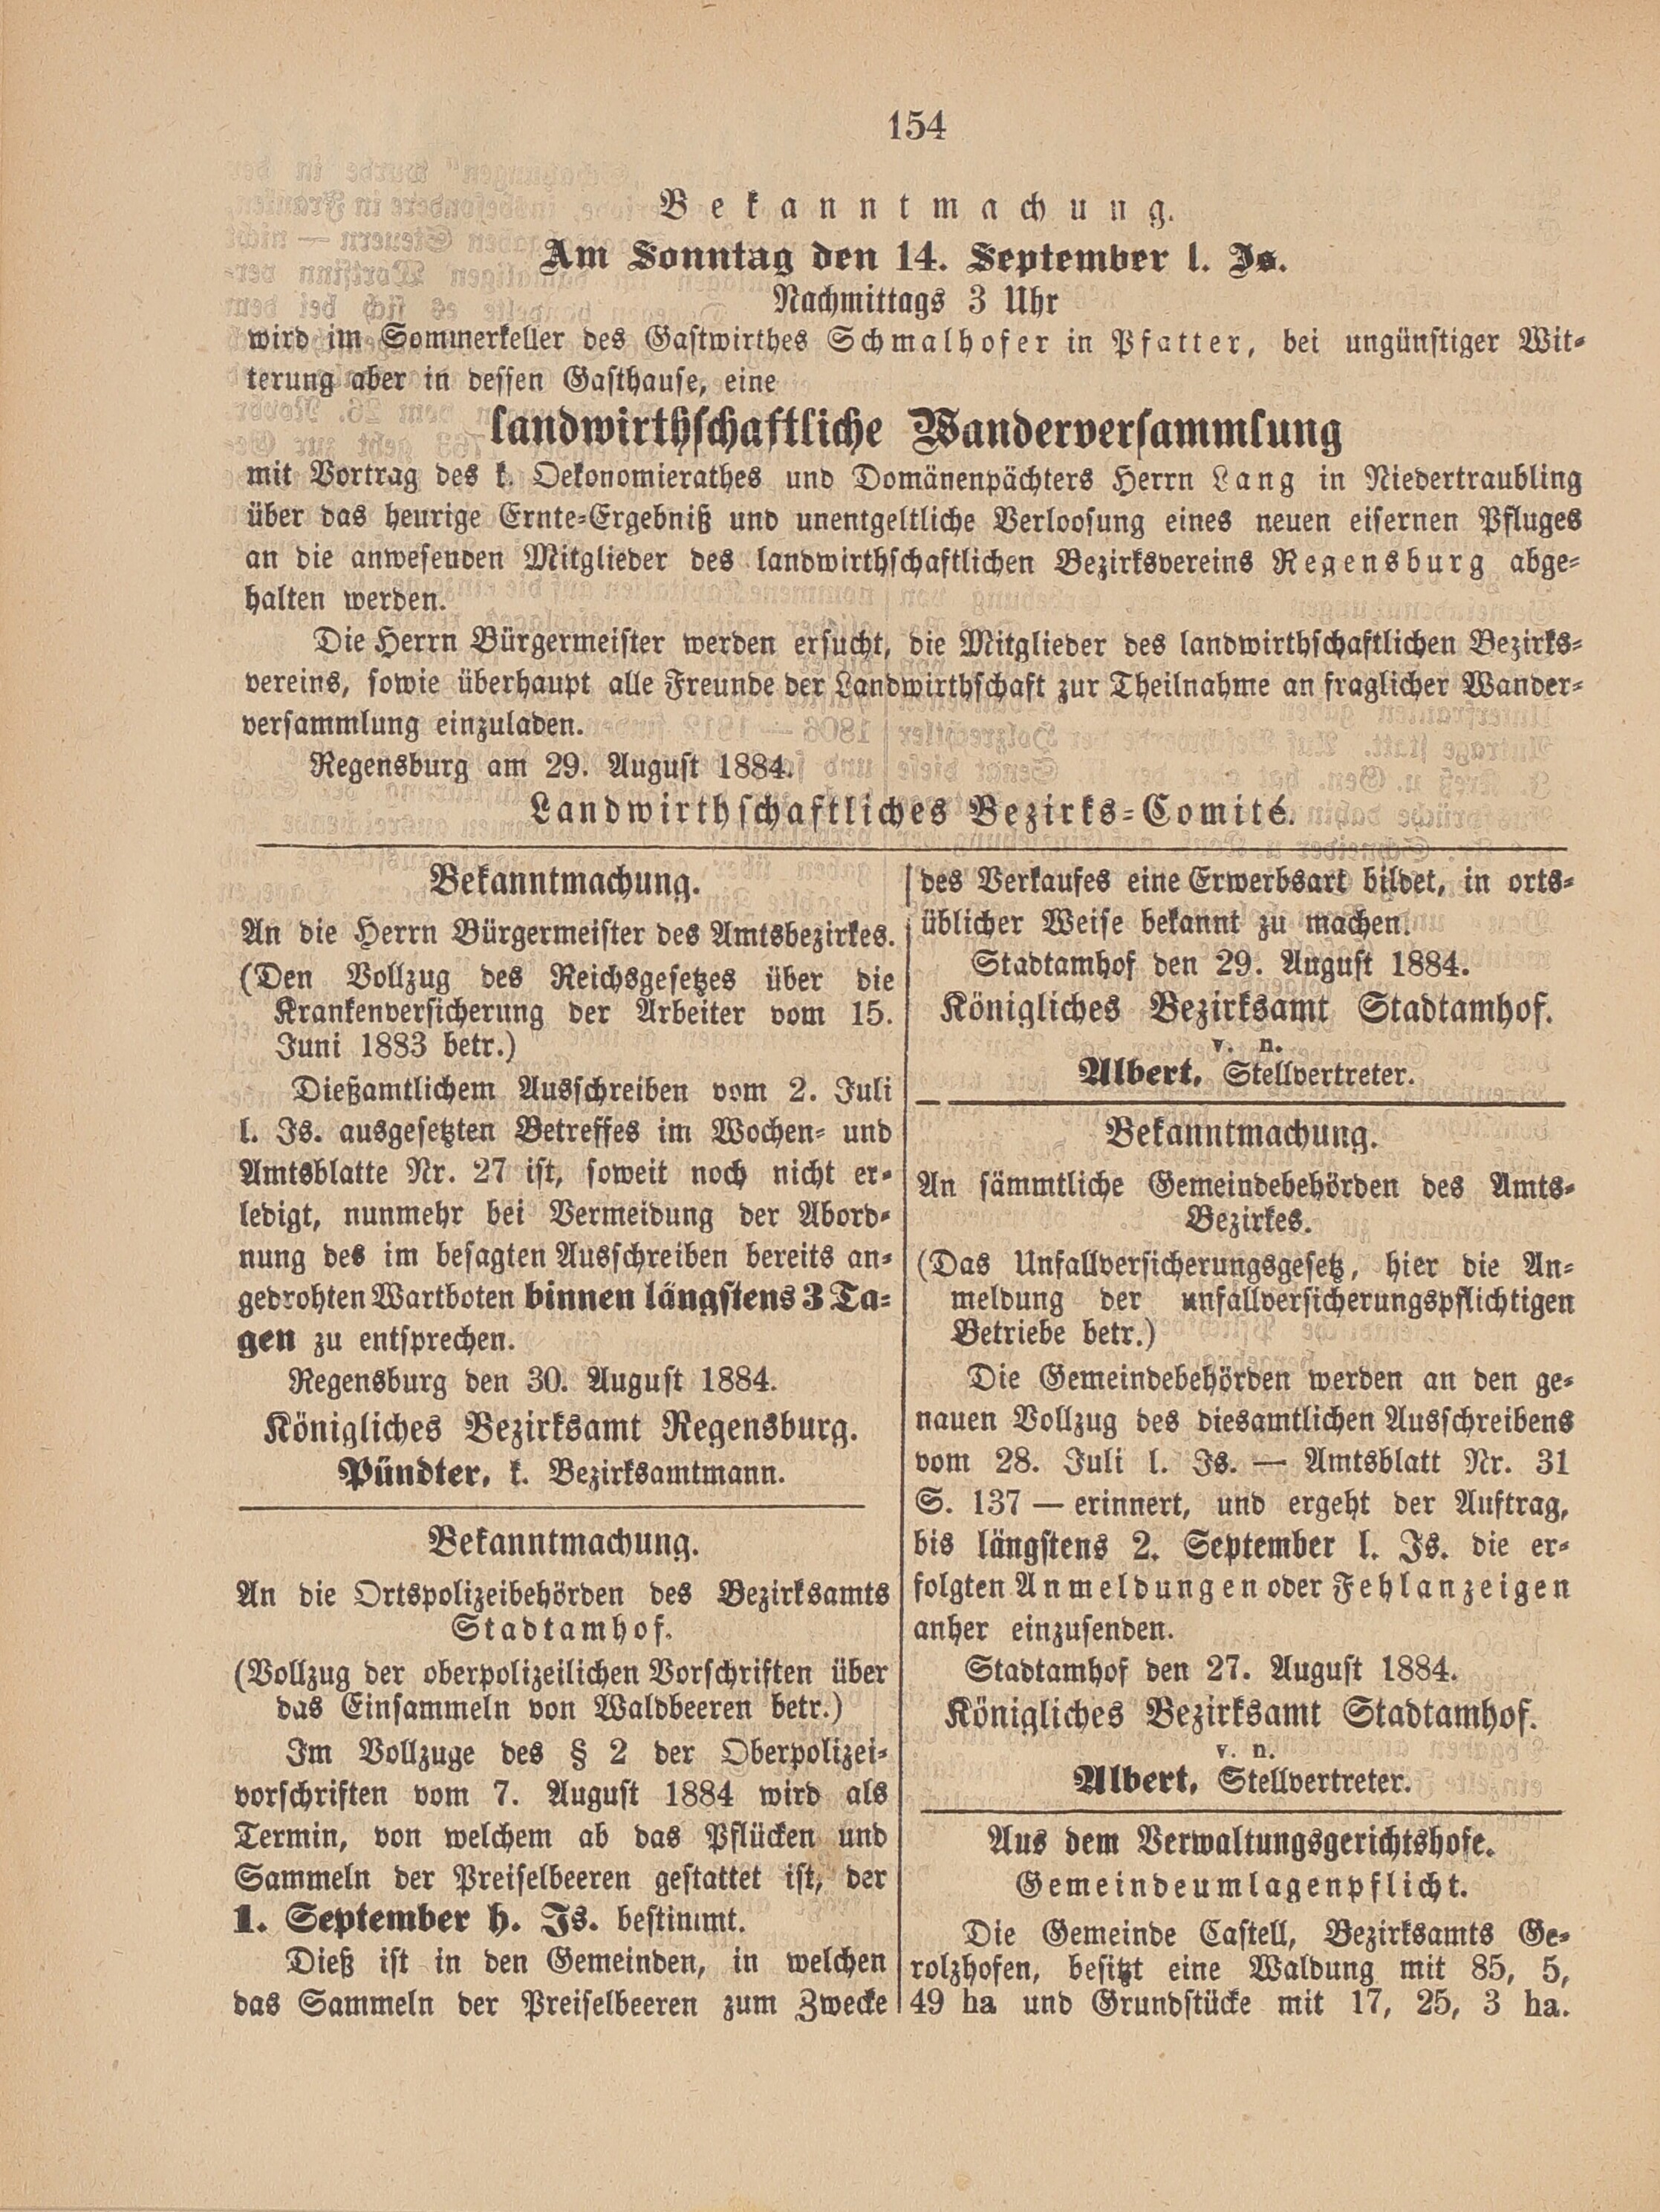 2. amtsblatt-stadtamhof-regensburg-1884-08-31-n35_1590